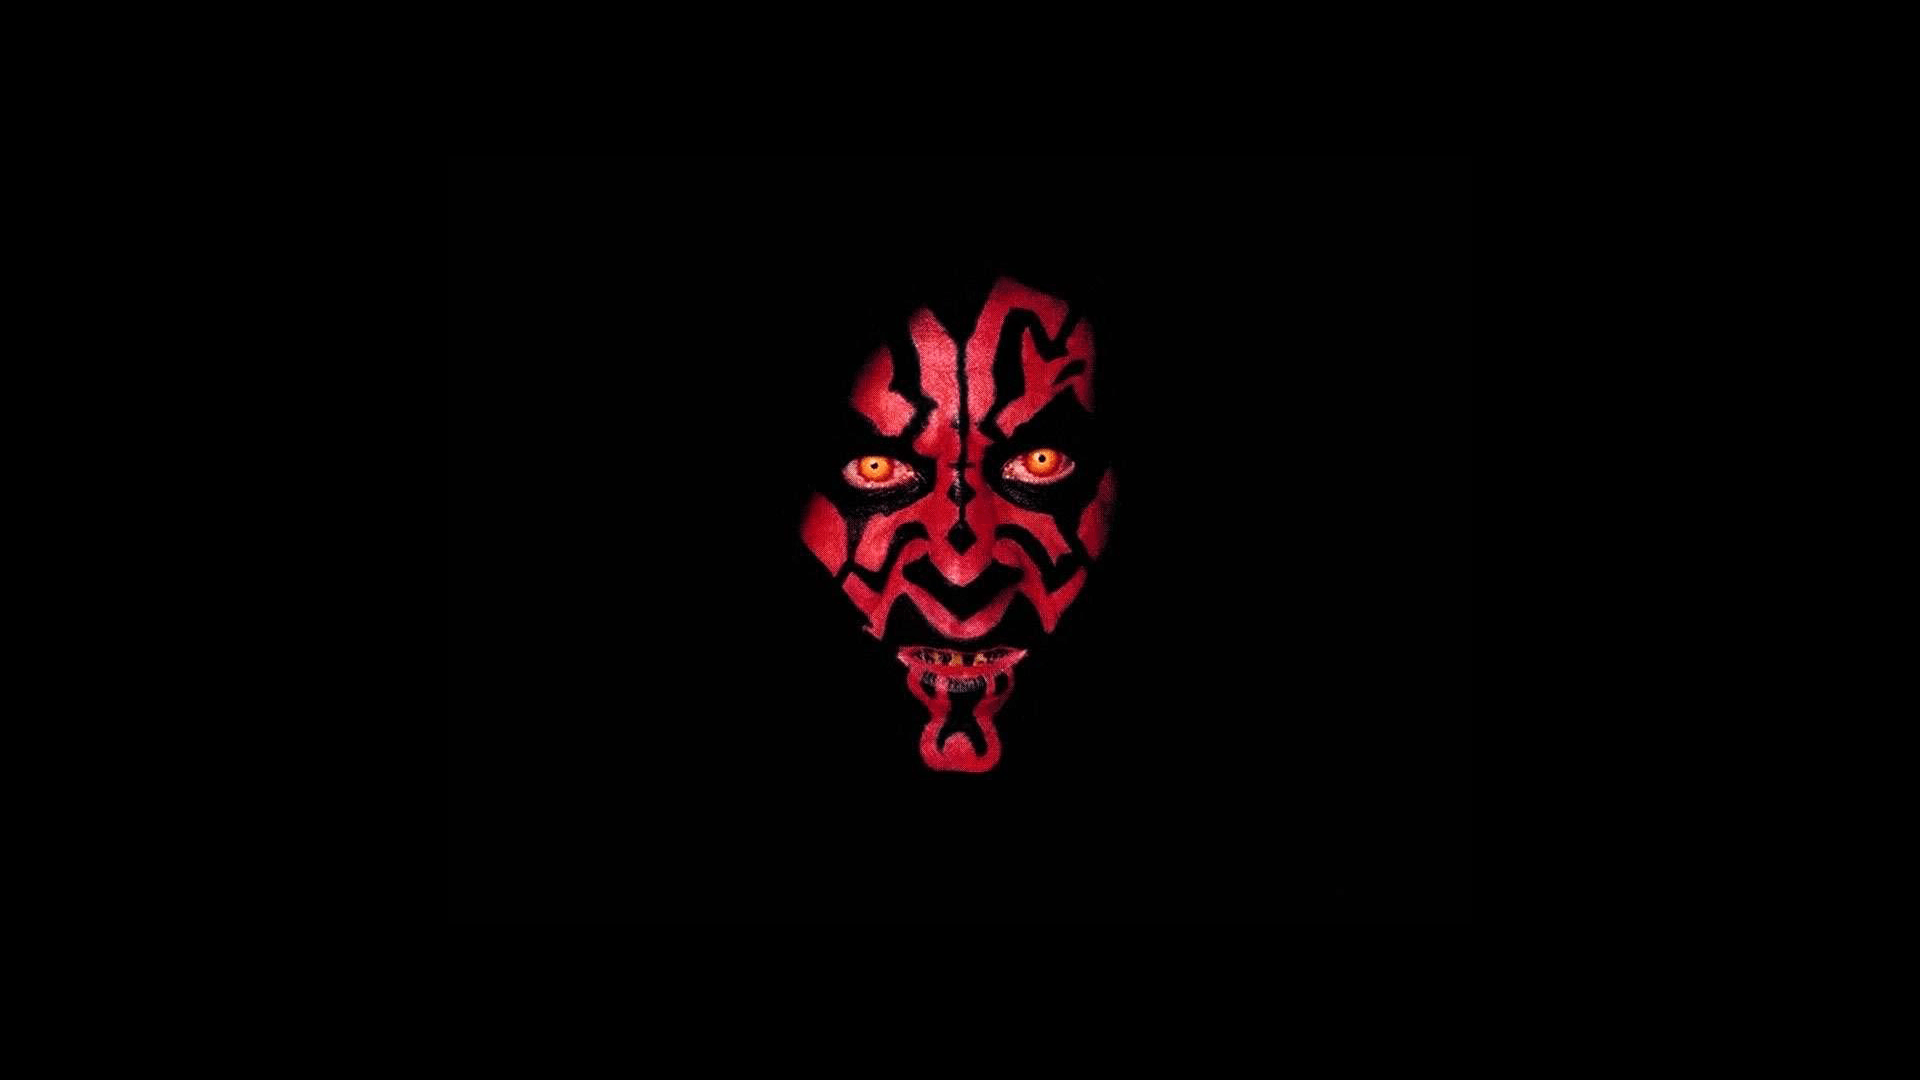 Star Wars movie wallpaper in HD Vader